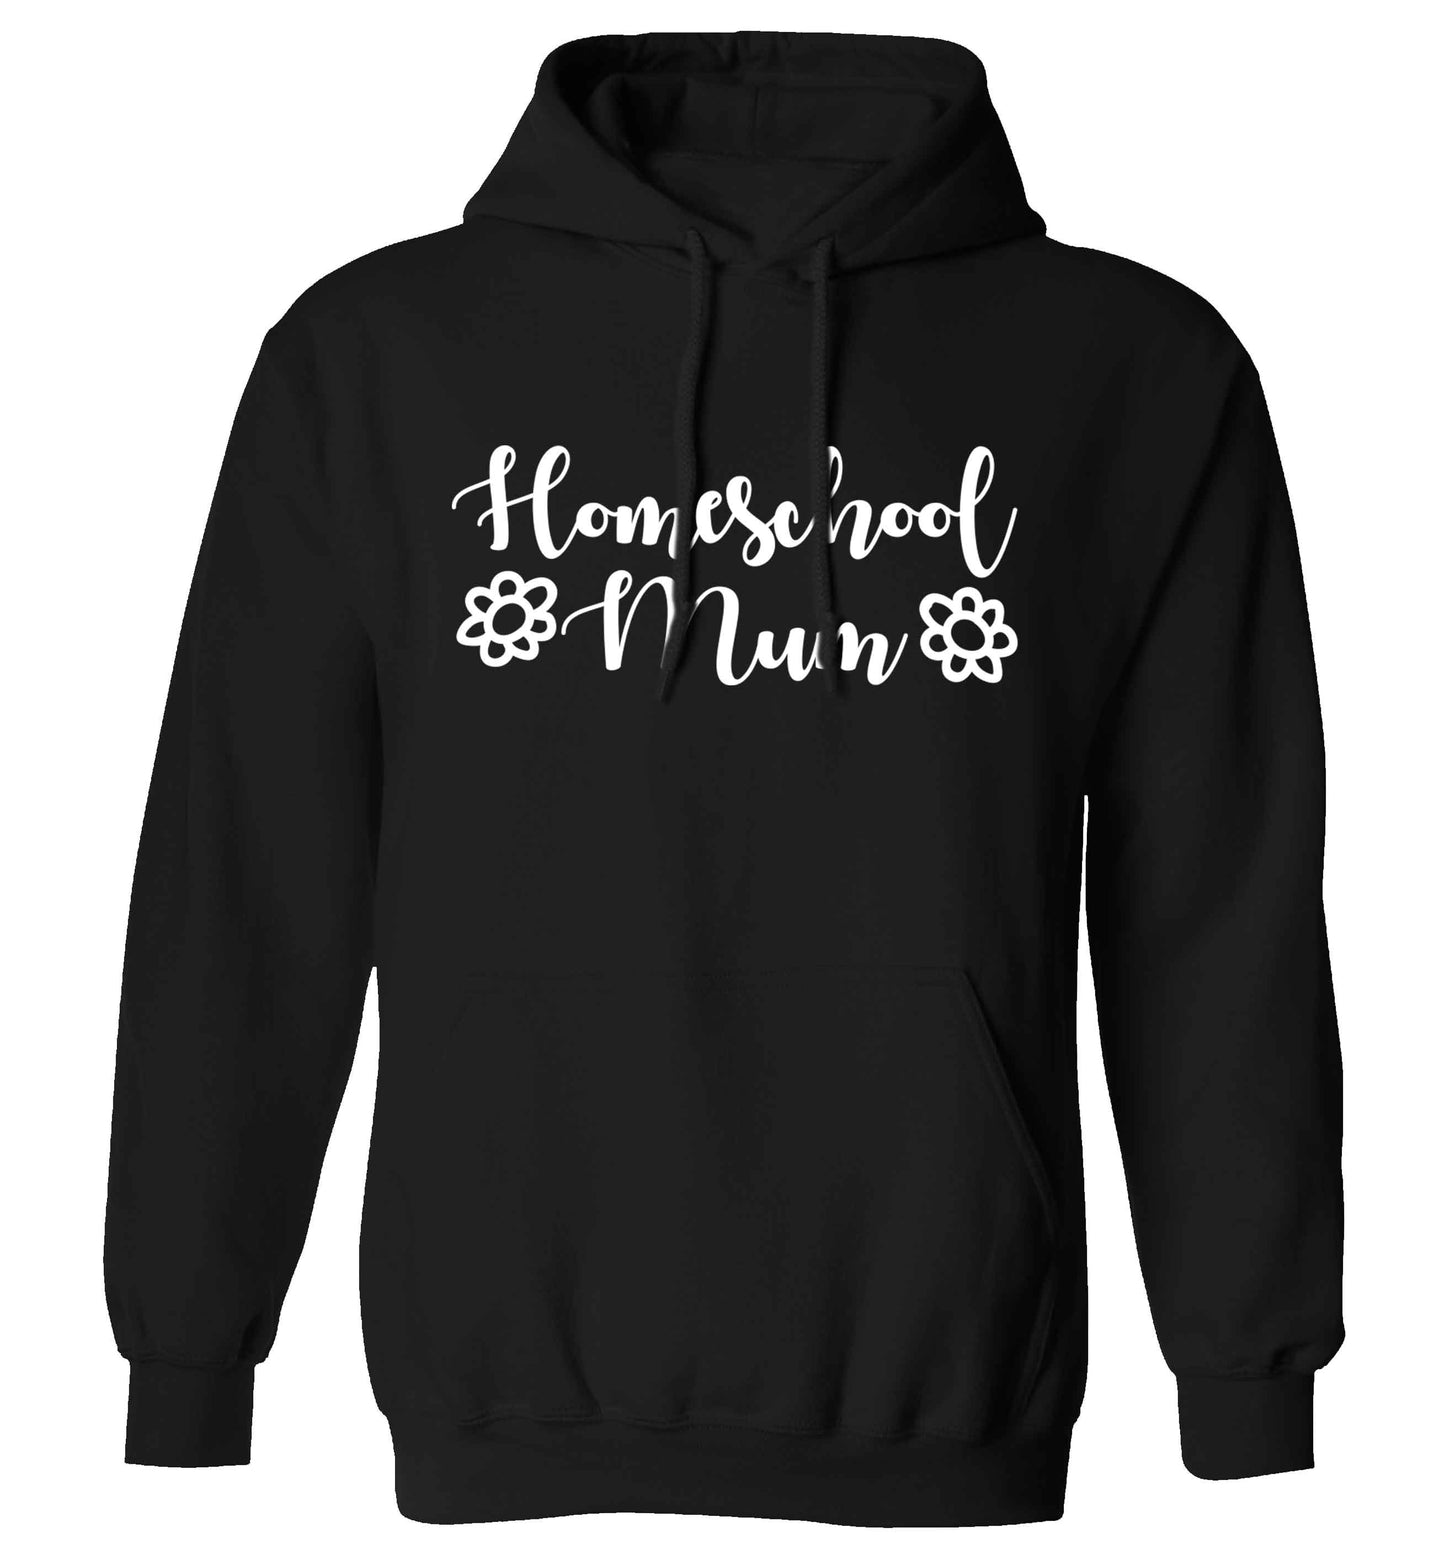 Homeschool mum adults unisex black hoodie 2XL